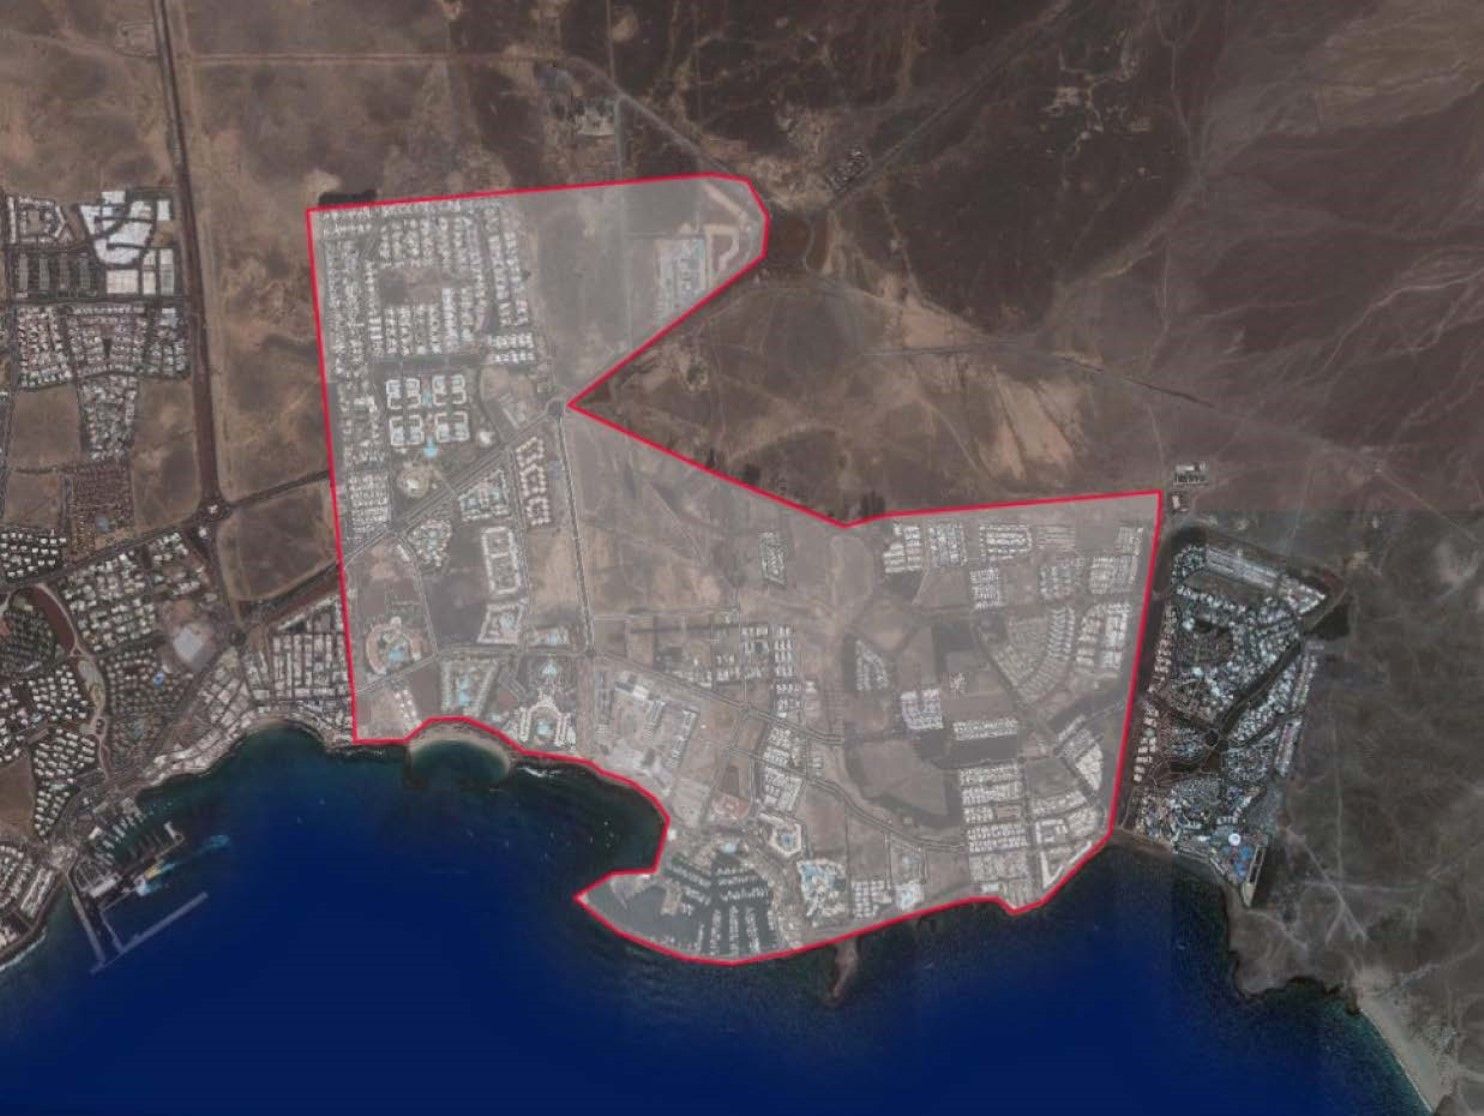 Zona de Playa Blanca en la que habrá un corte en el suministro el próximo jueves 13 de abril